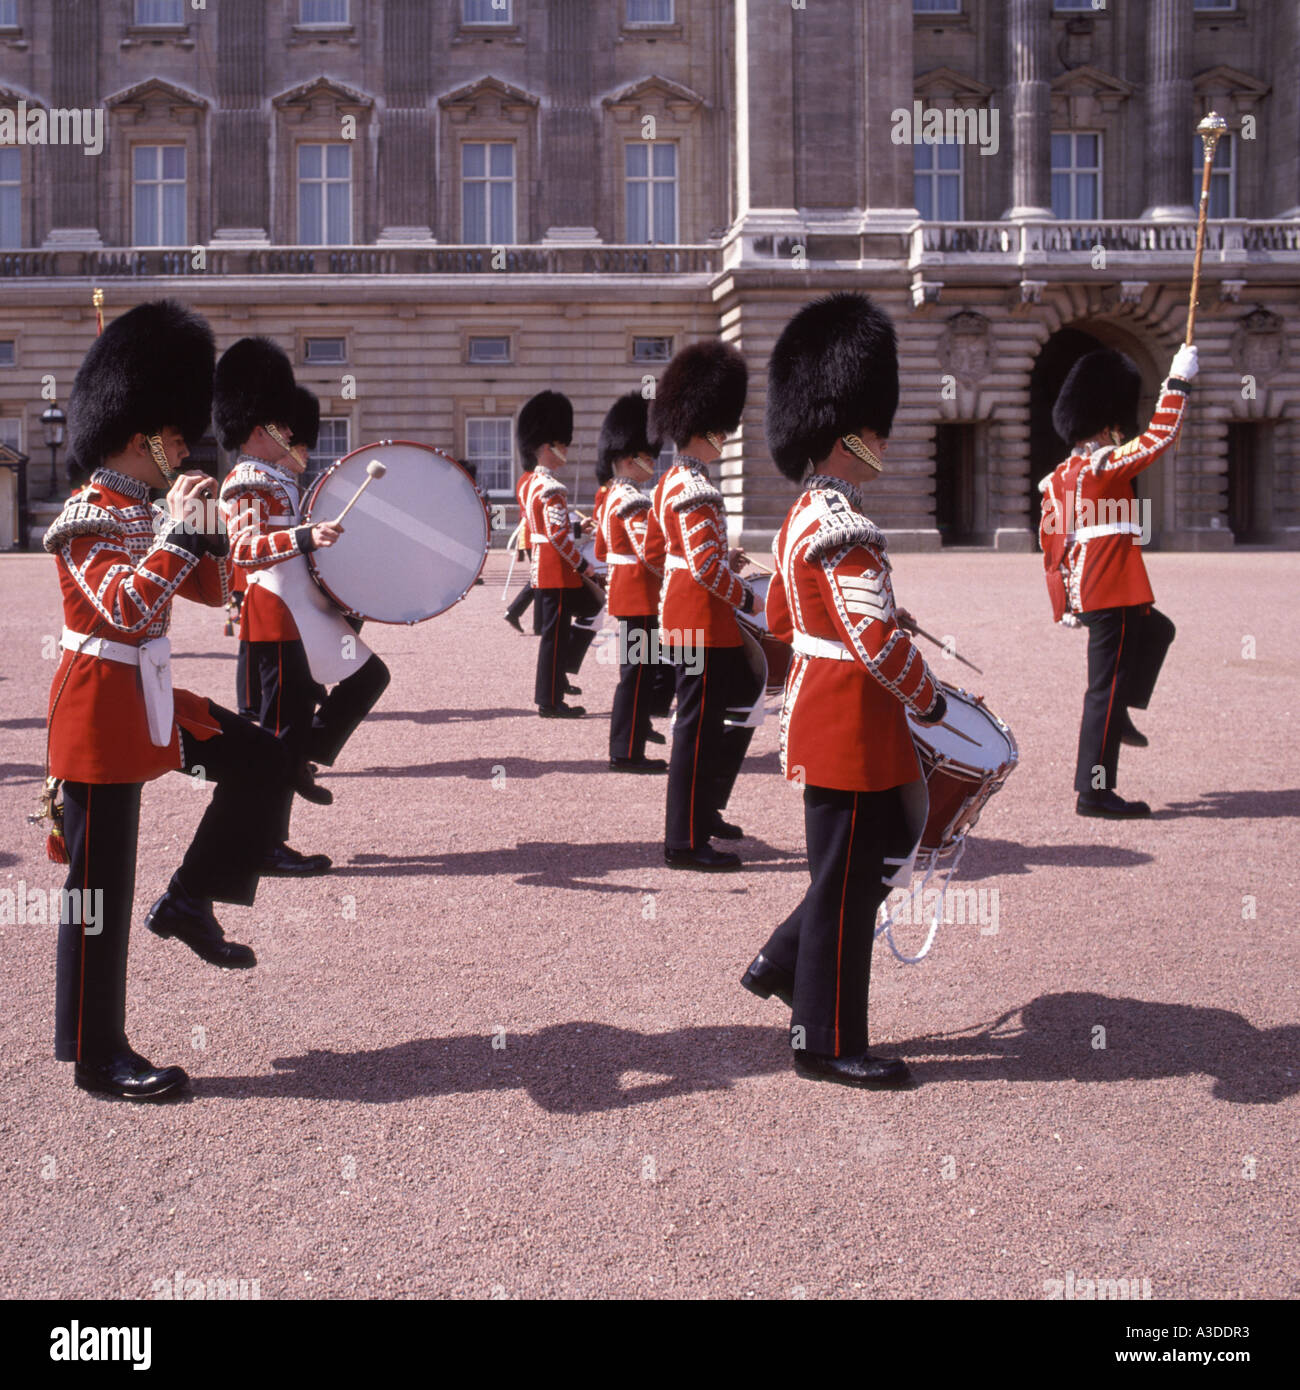 Événement touristique soldat britannique et musiciens du groupe des Grenadier Guards de Buckingham Palace pour changer guard cérémonie défilé Londres Angleterre Royaume-uni Banque D'Images